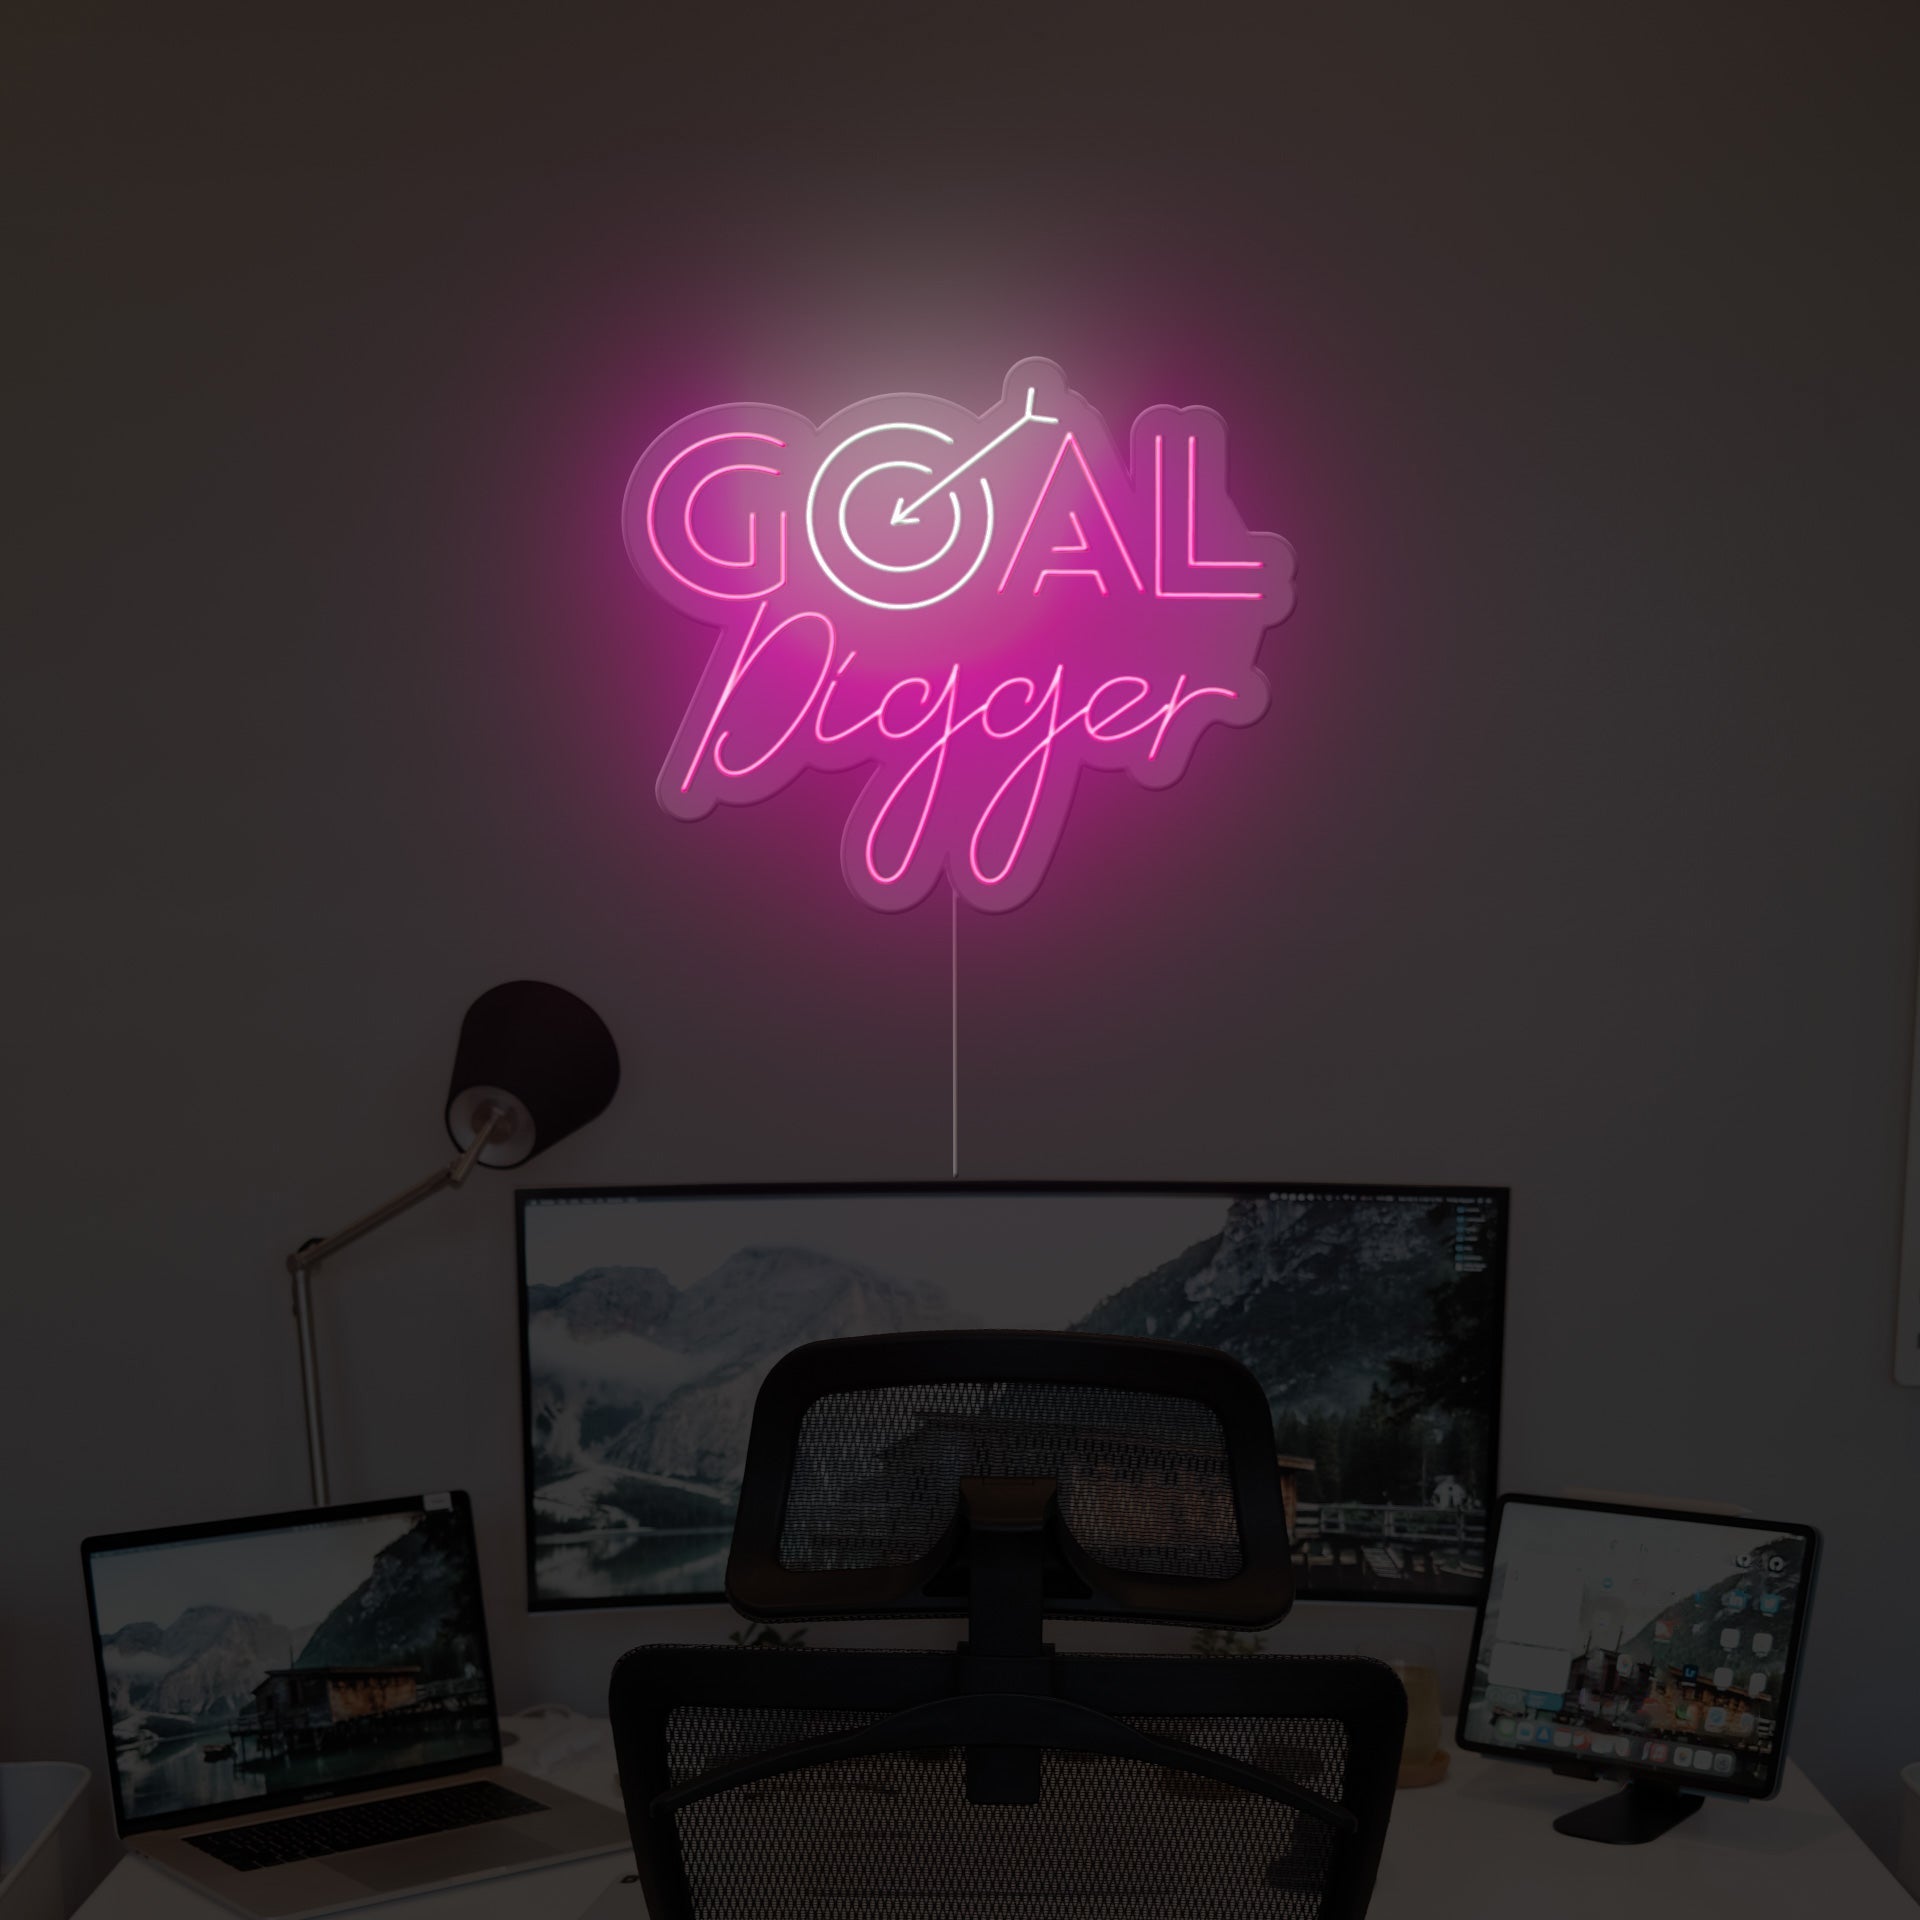 goal-digger-neon-sign